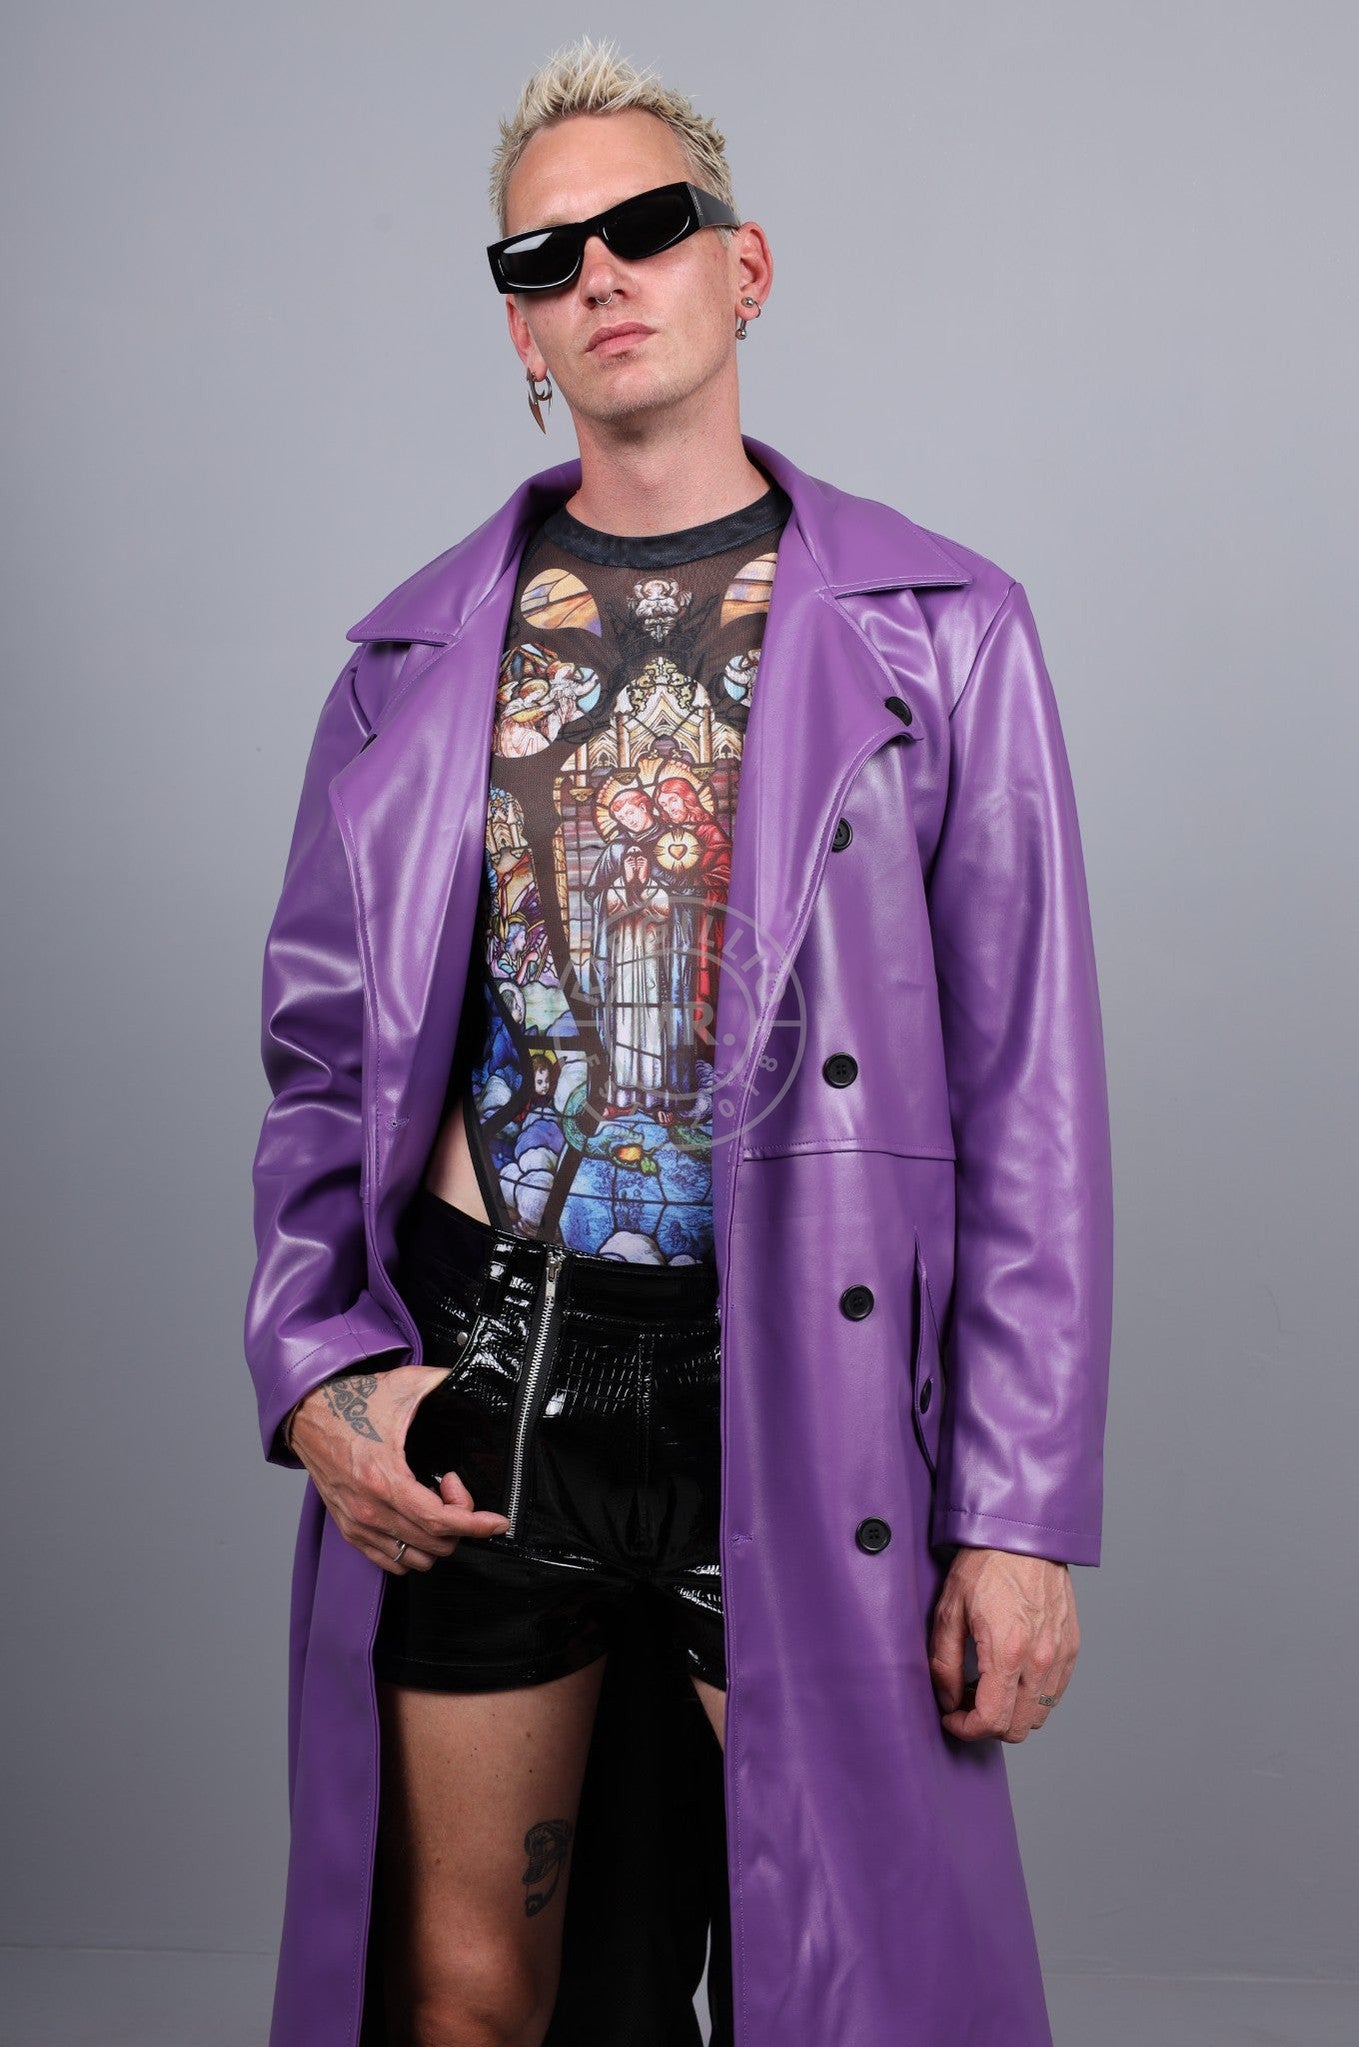 MR. Trench Coat - Neon Purple at MR. Riegillio